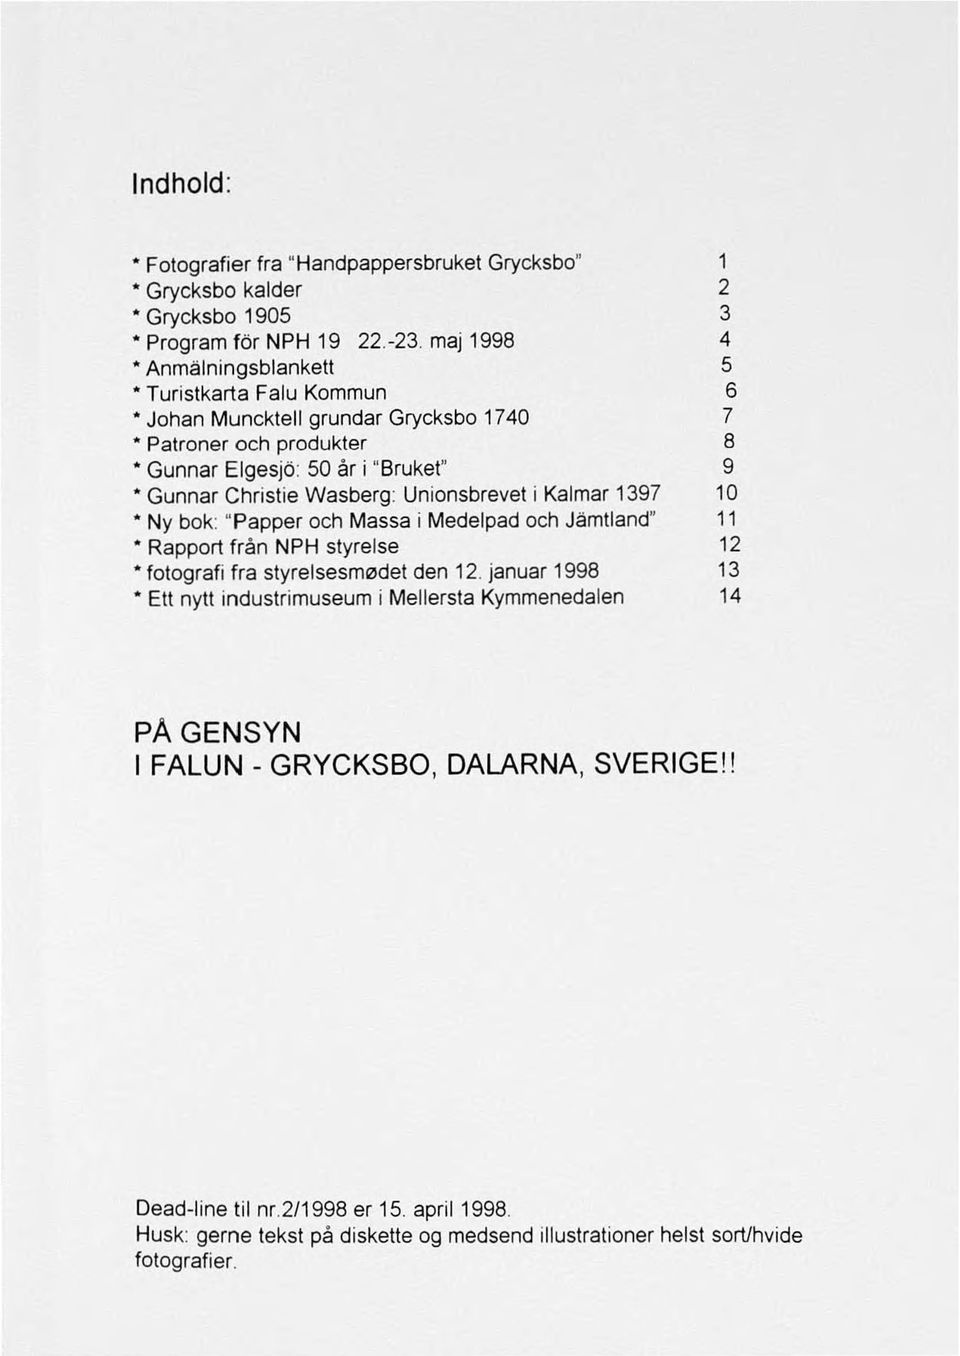 Wasberg: Unionsbrevet i Kalmar 1397 10 Ny bok: "Papper och Massa i Medelpad och Jämtland" 11 Rapport från NPH styrelse 12 fotografi fra styrelsesm0det den 12.